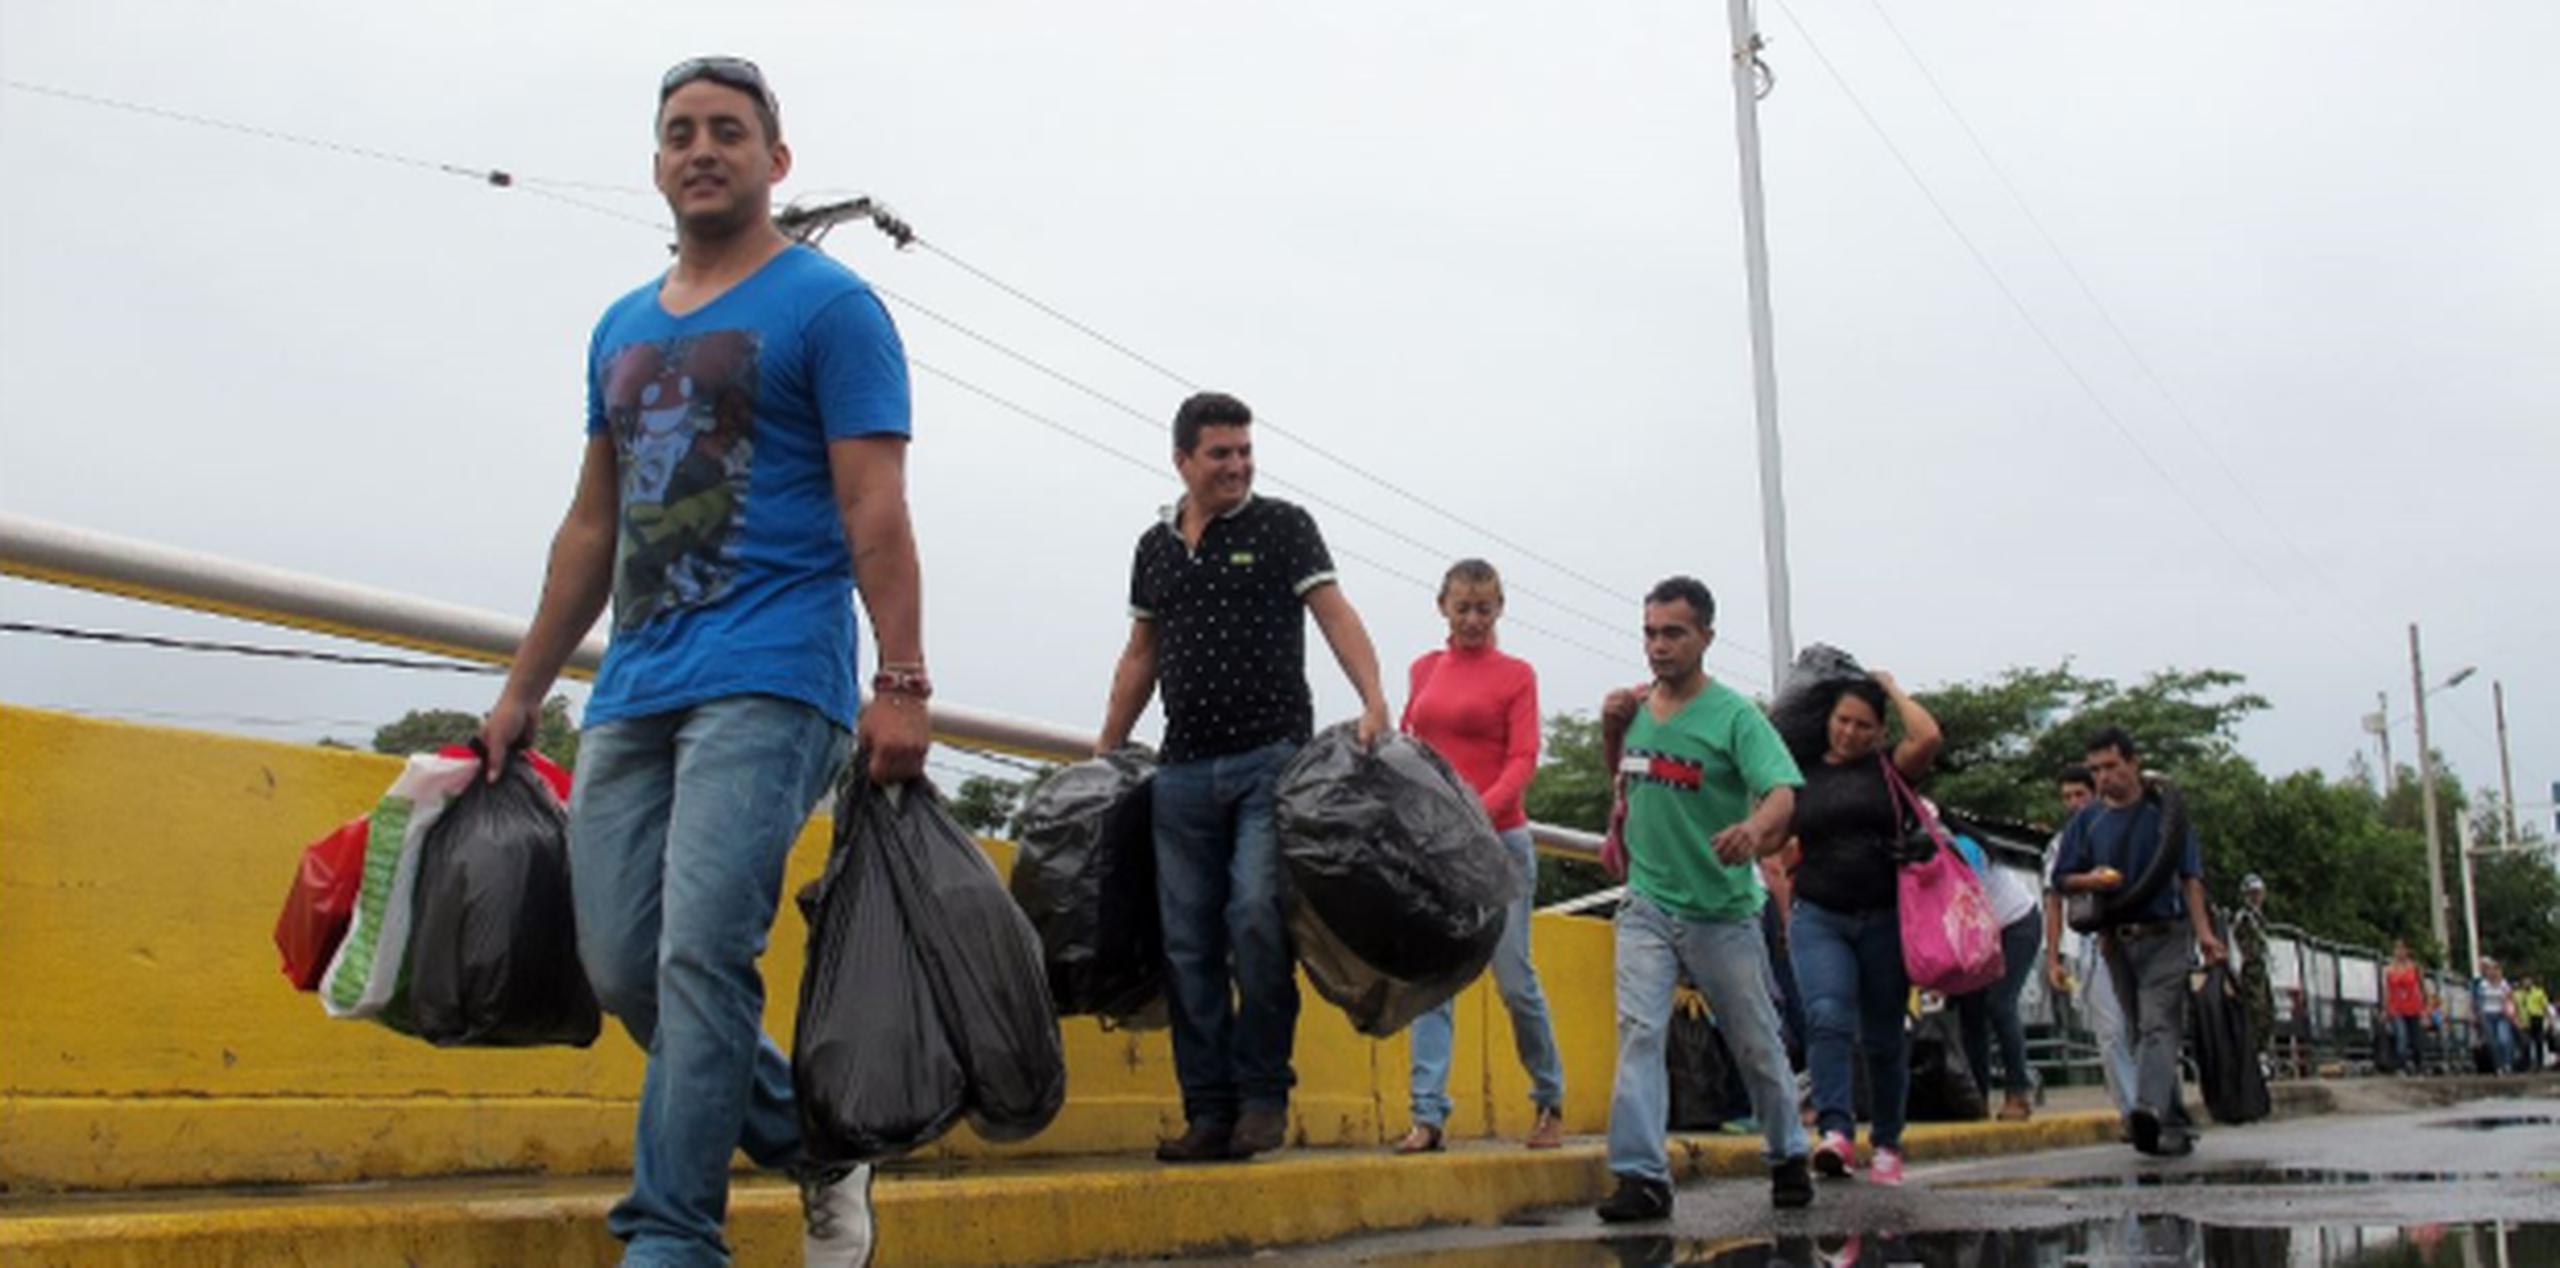 La televisión estatal mostraba escenas de venezolanos que regresaban de Colombia con las manos vacías, quejándose de los precios supuestamente inflados y el mal trato a manos de sus vecinos. (EFE)